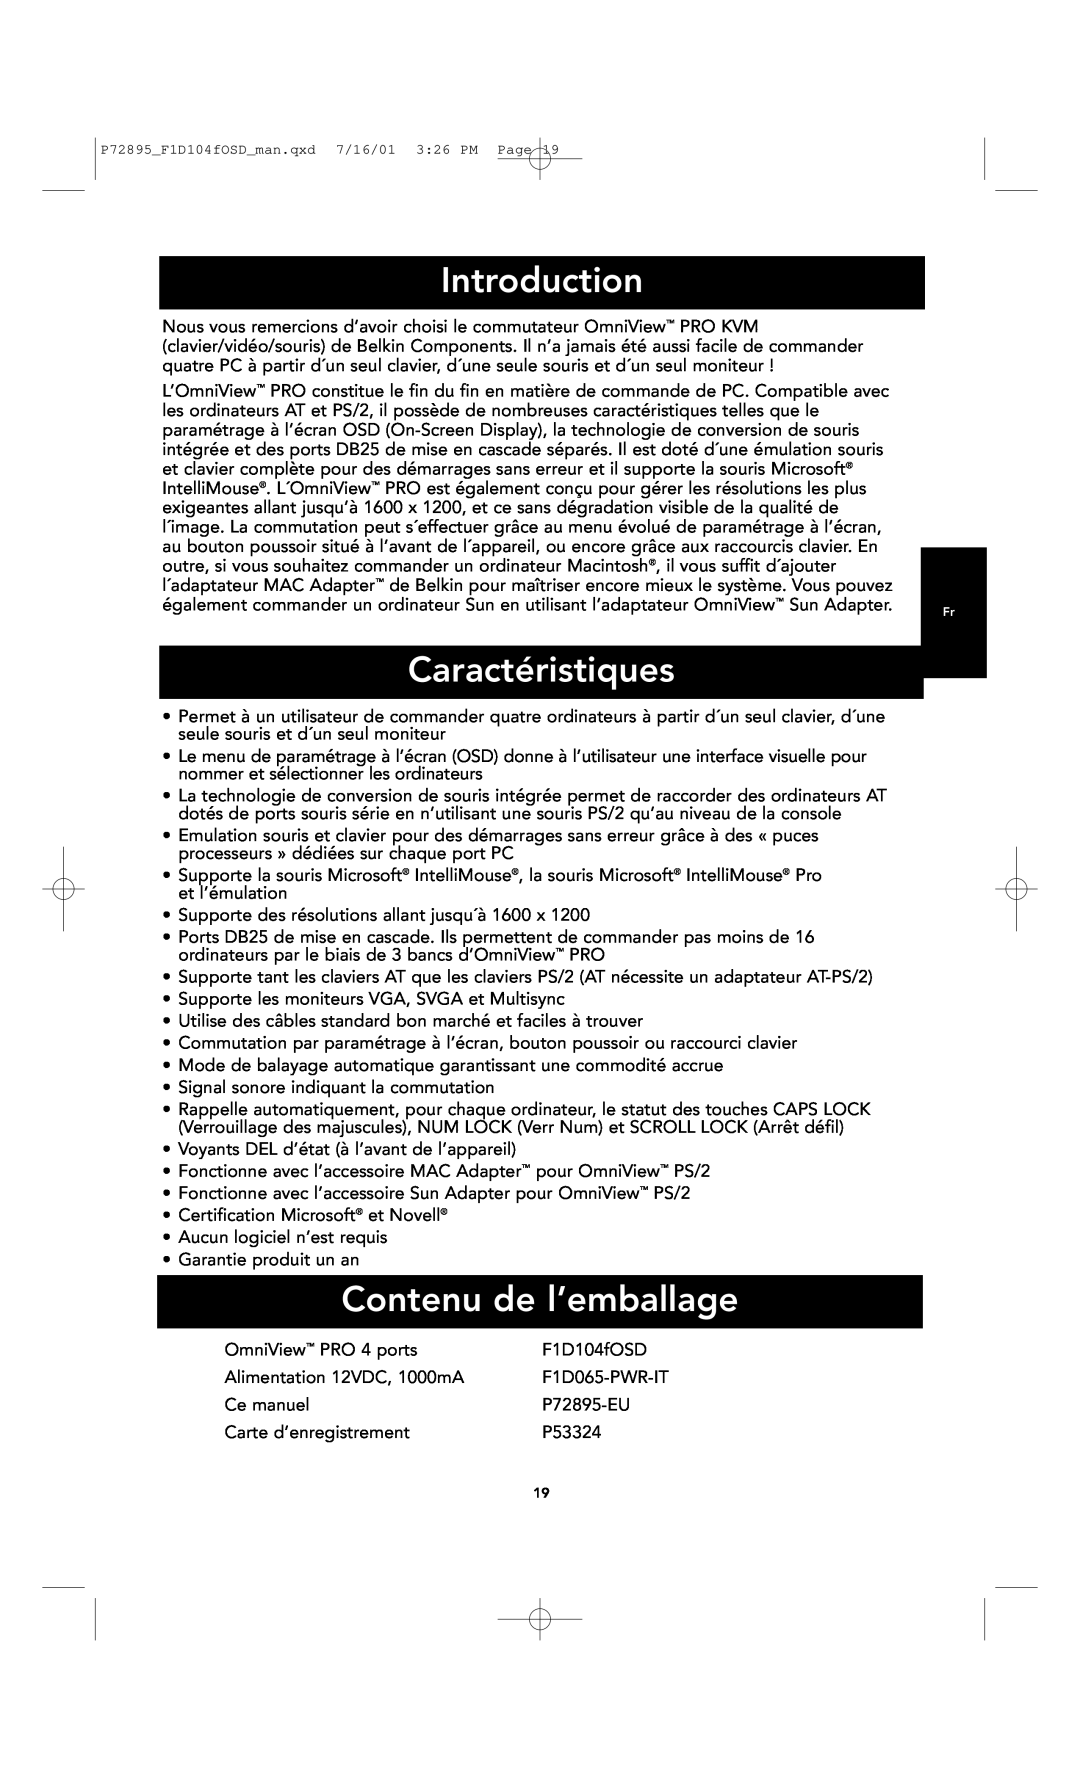 Belkin F1D104-OSD Caractéristiques, Contenu de l’emballage, Introduction, P72895F1D104fOSDman.qxd 7/16/01 326 PM Page 